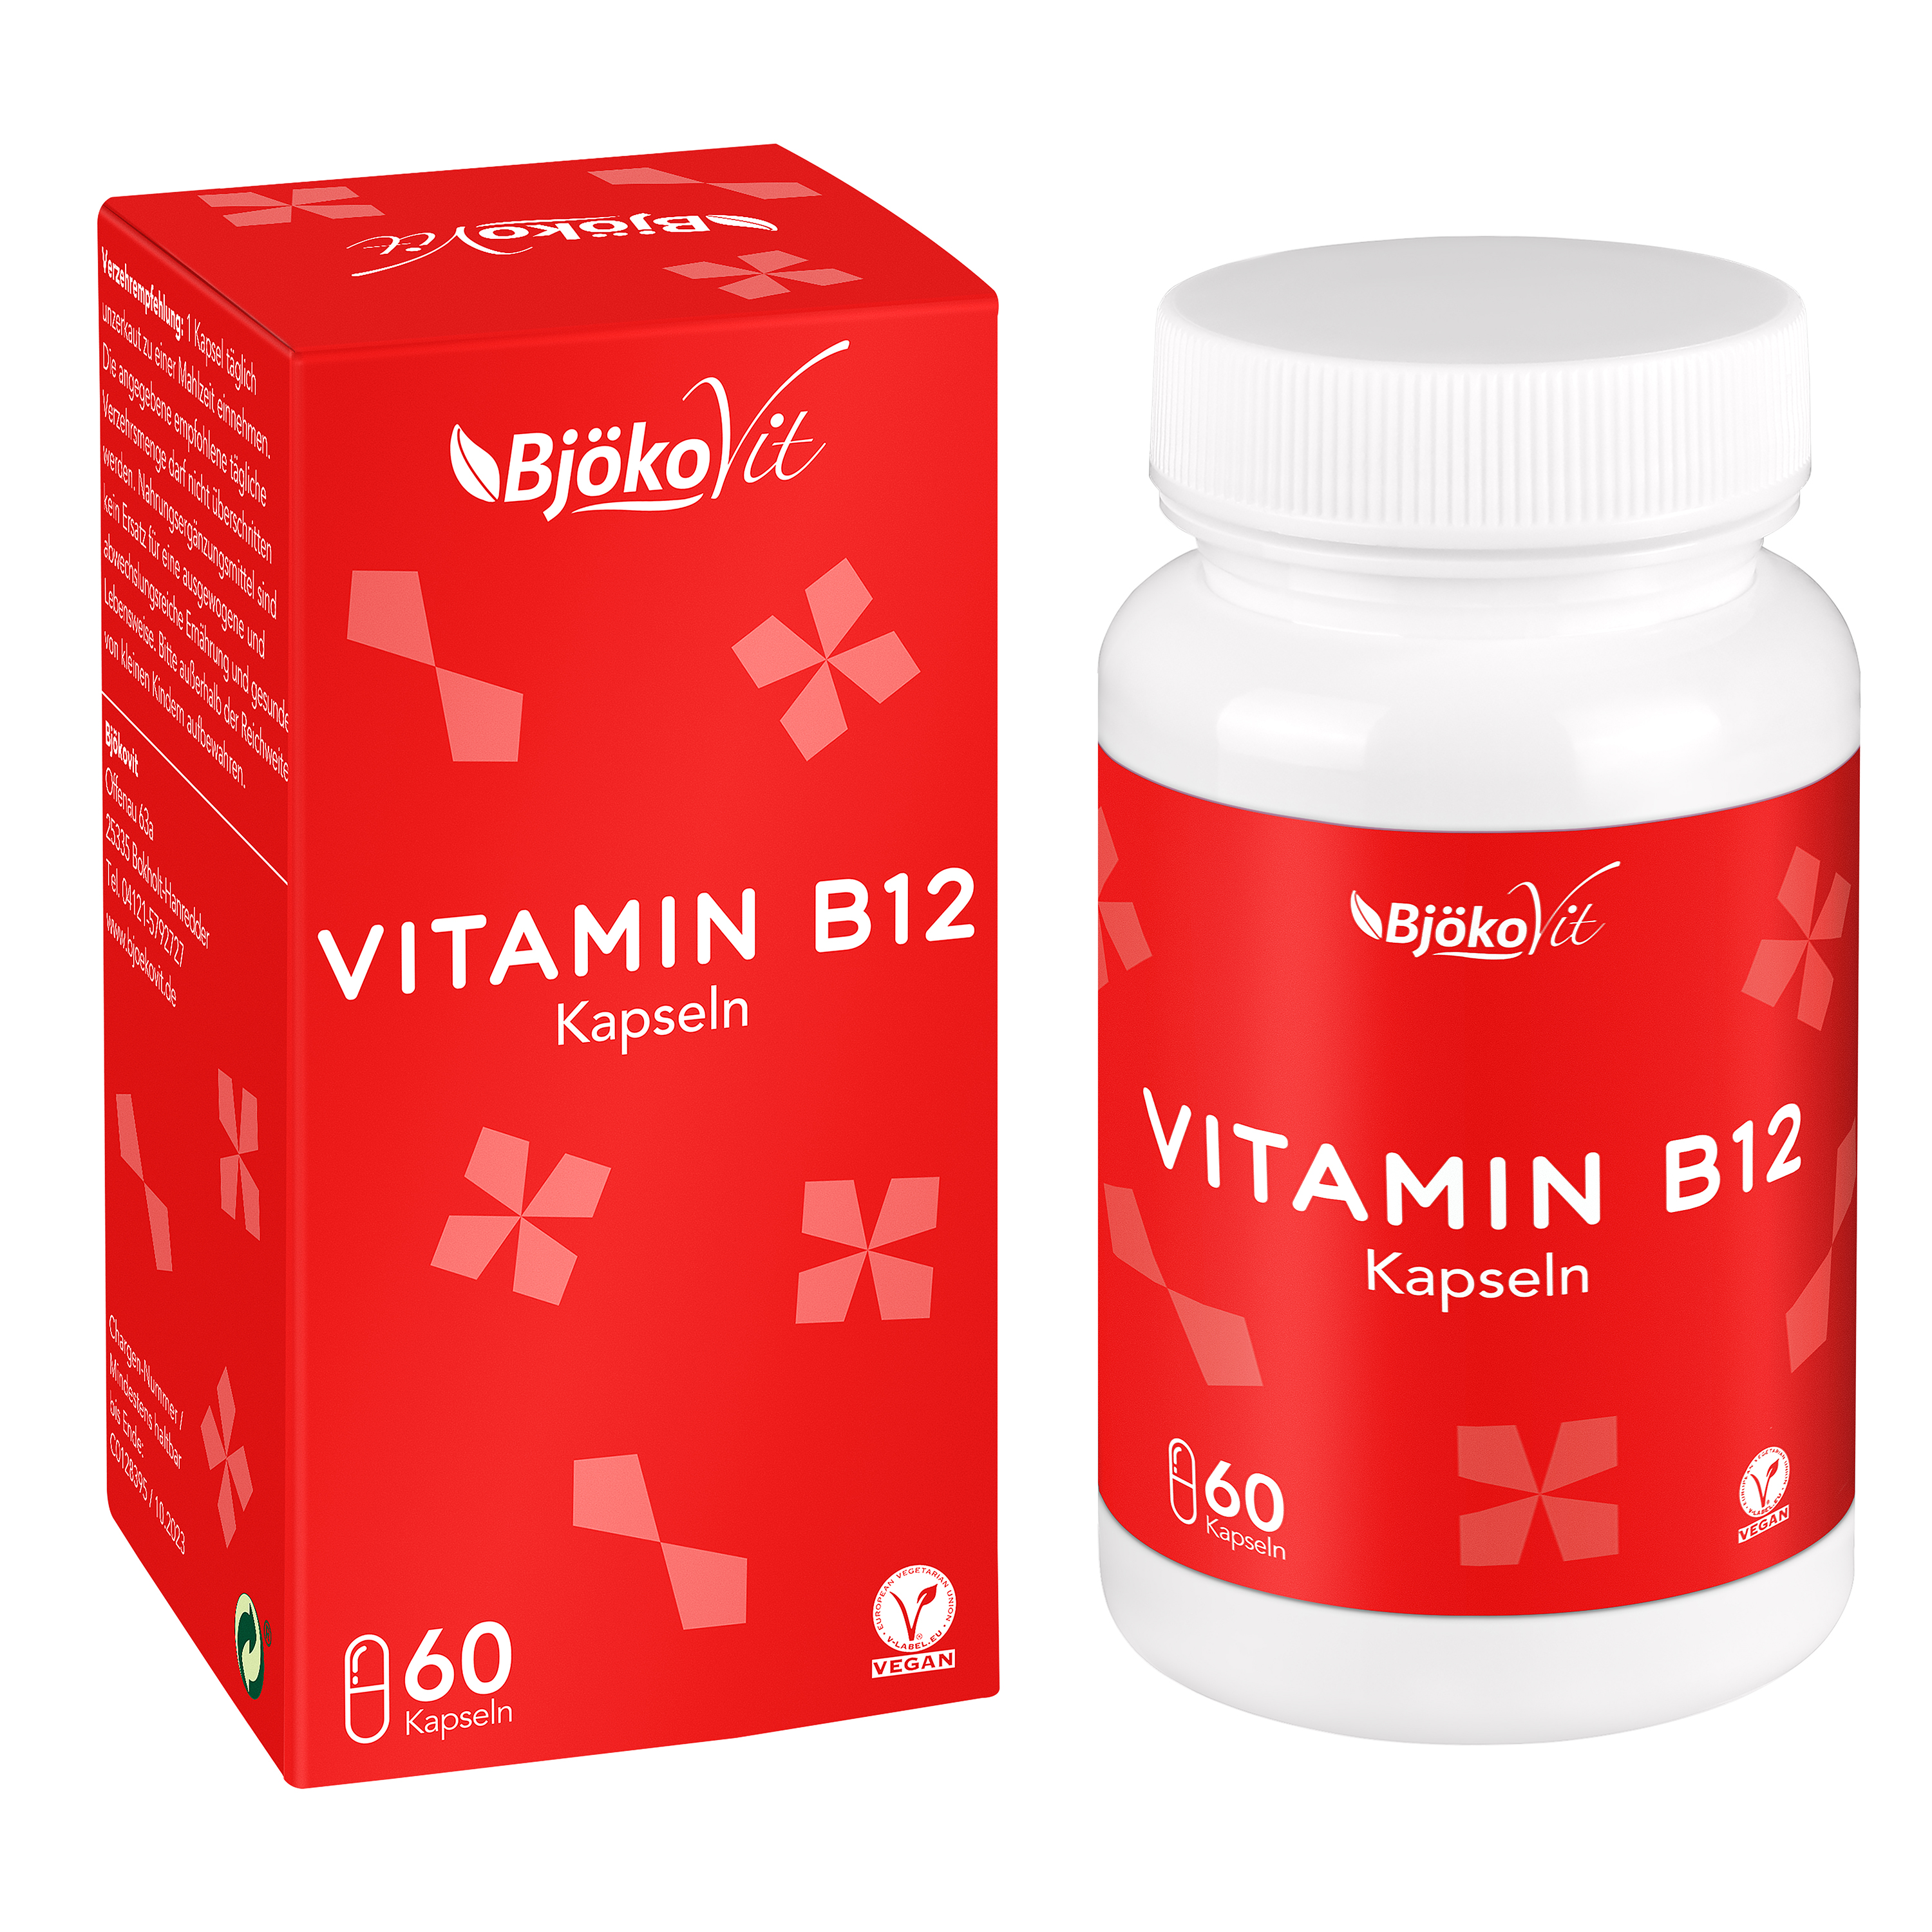 BjökoVit Vitamin B12 Kapseln 1000mcg vegan